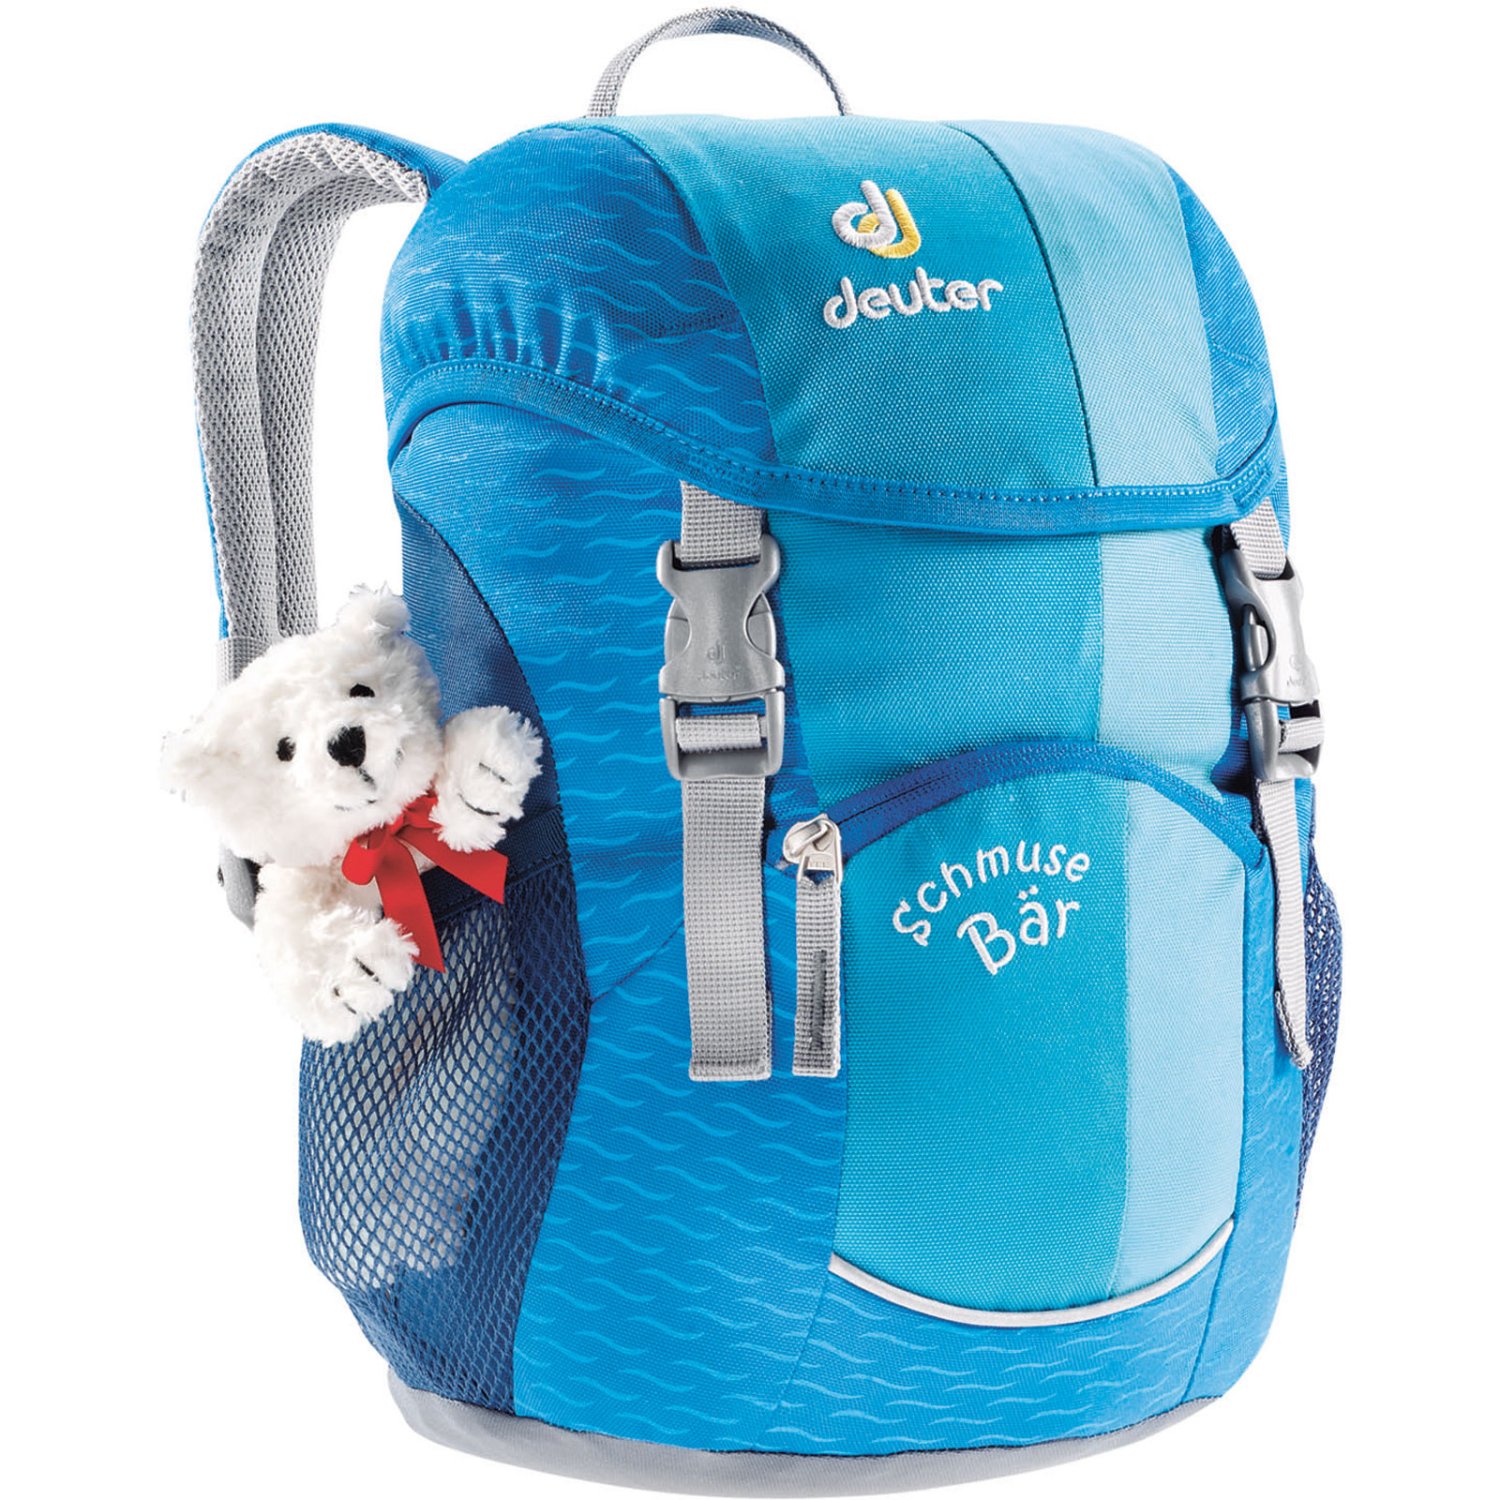 Велосипедный рюкзак Deuter Schmusebar, детский, 34х20х16, 8 л, голубой, 36003_3006 отражатель godox rft 09 80 см просветный